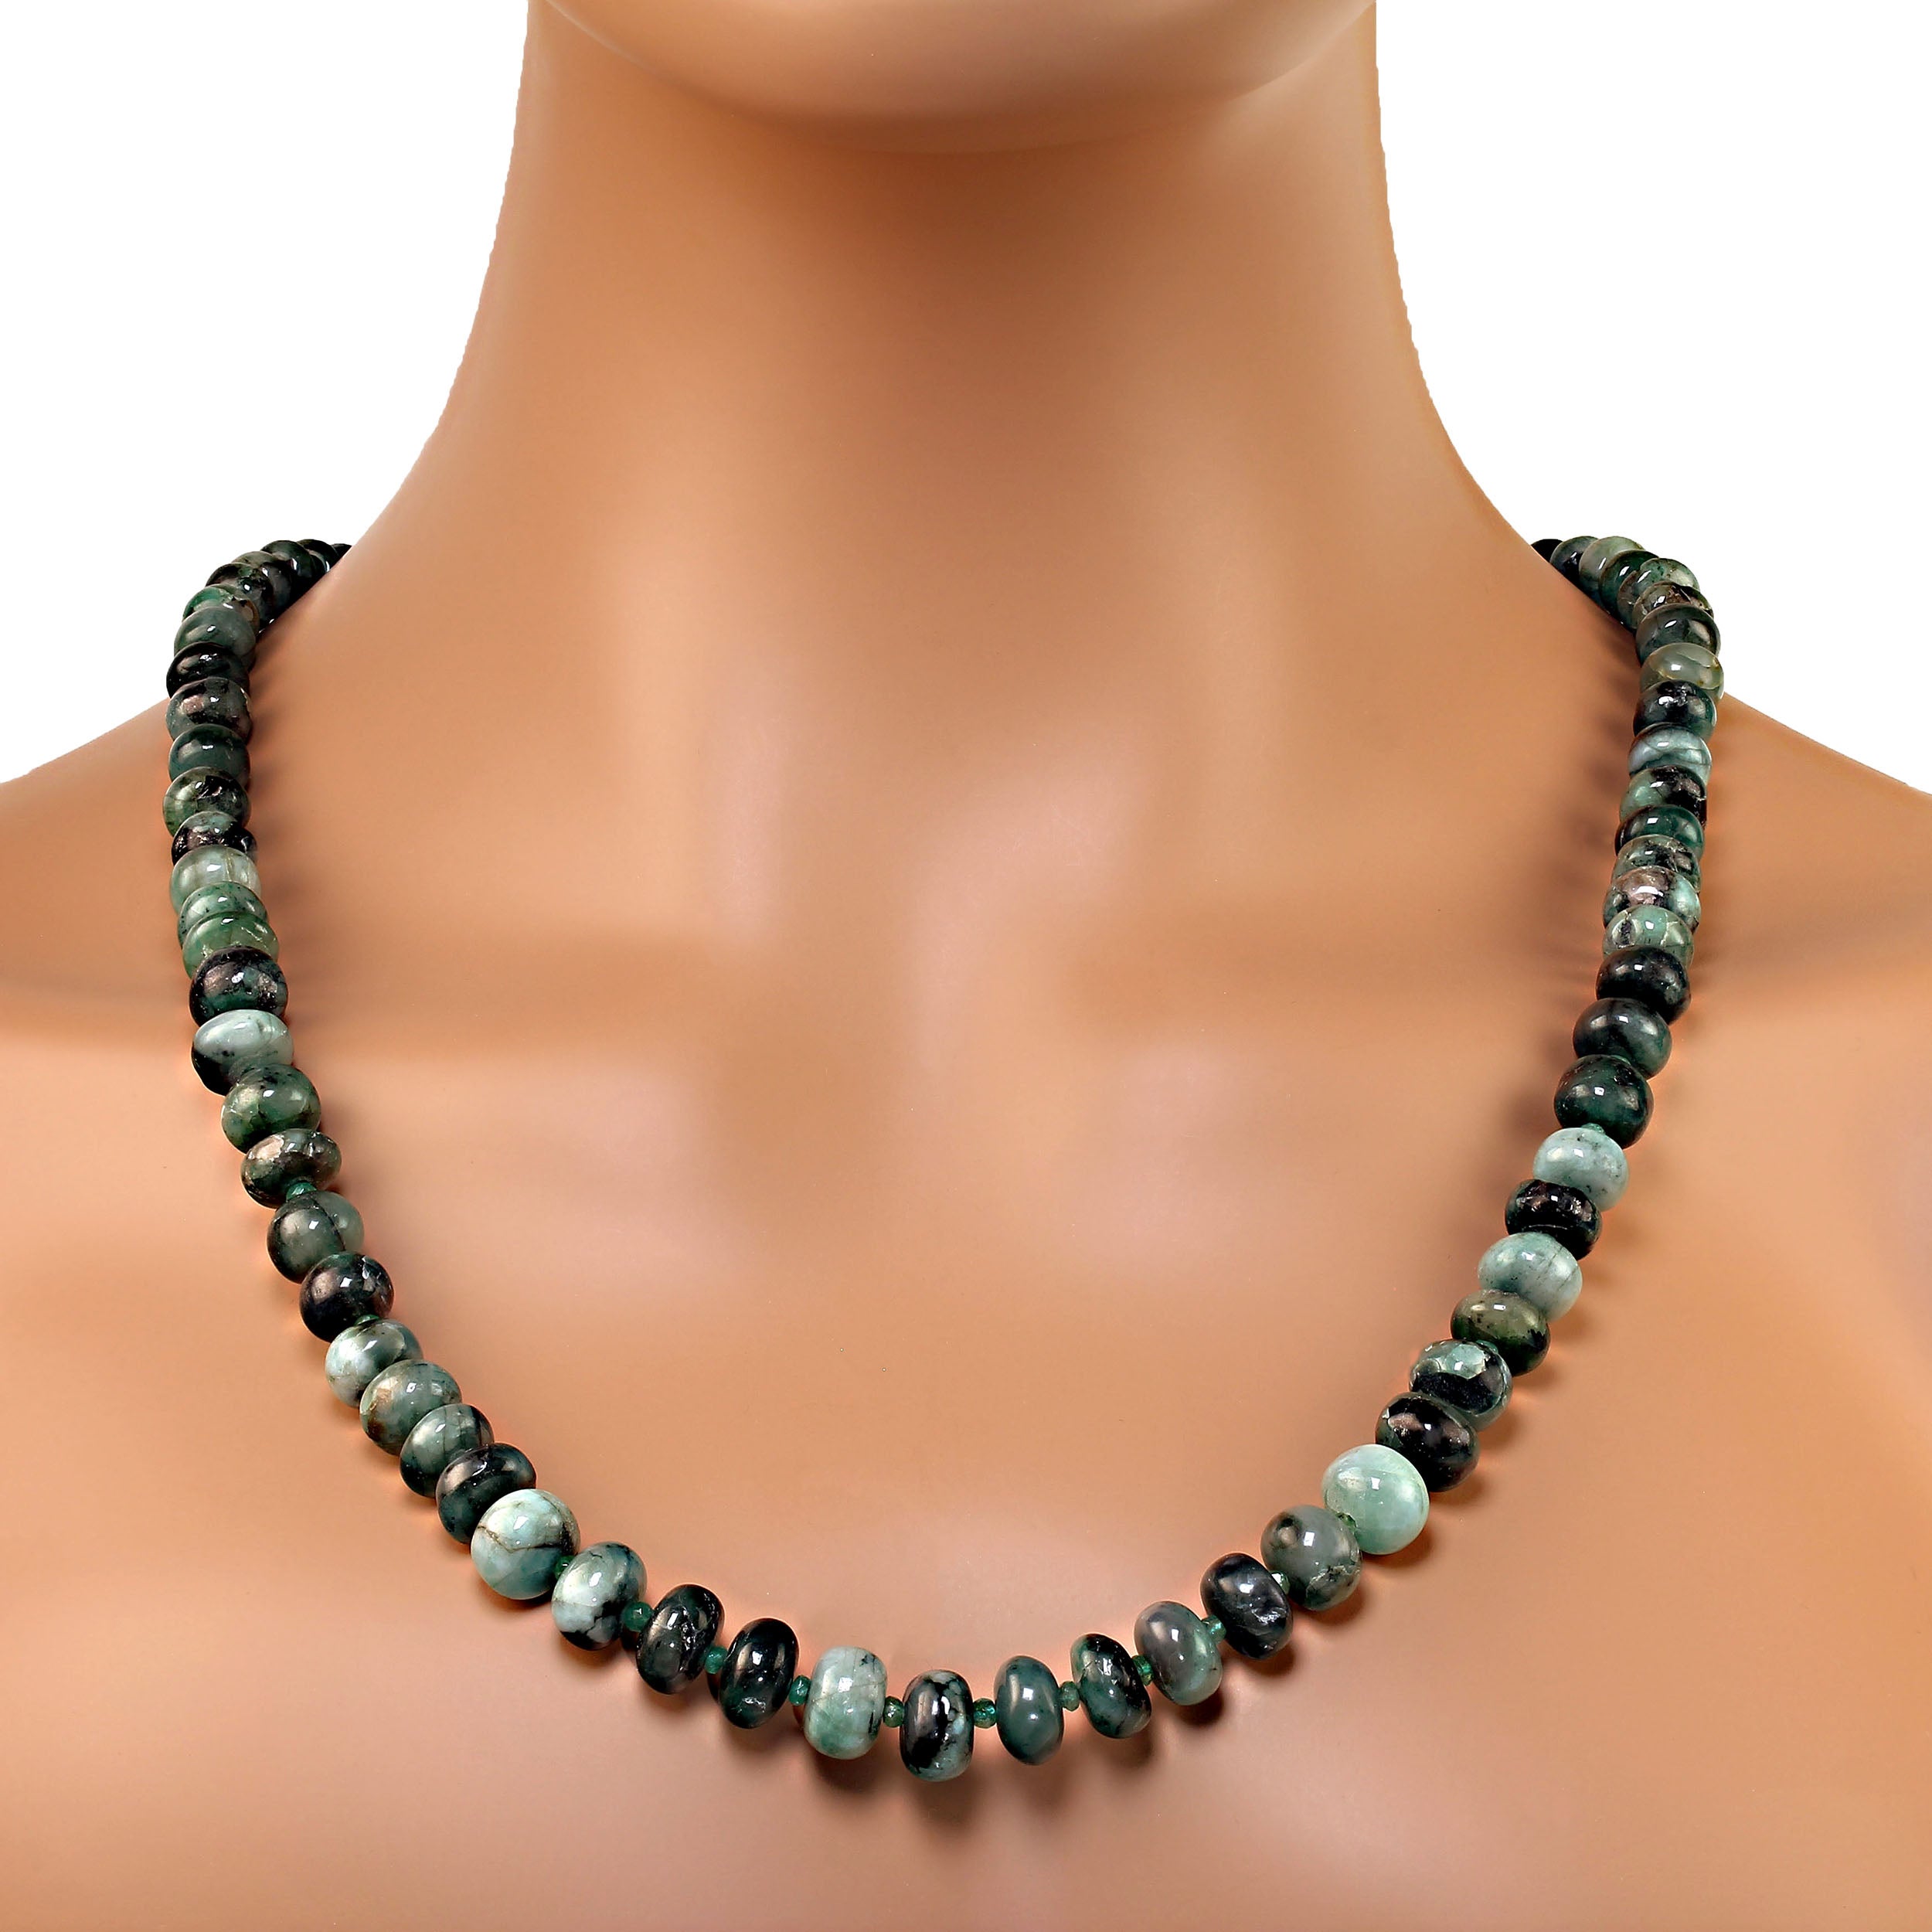 AJD 25 Zoll abgestufte reichgrüne Smaragd Matrix Rondelle Halskette. Tolles Geschenk!